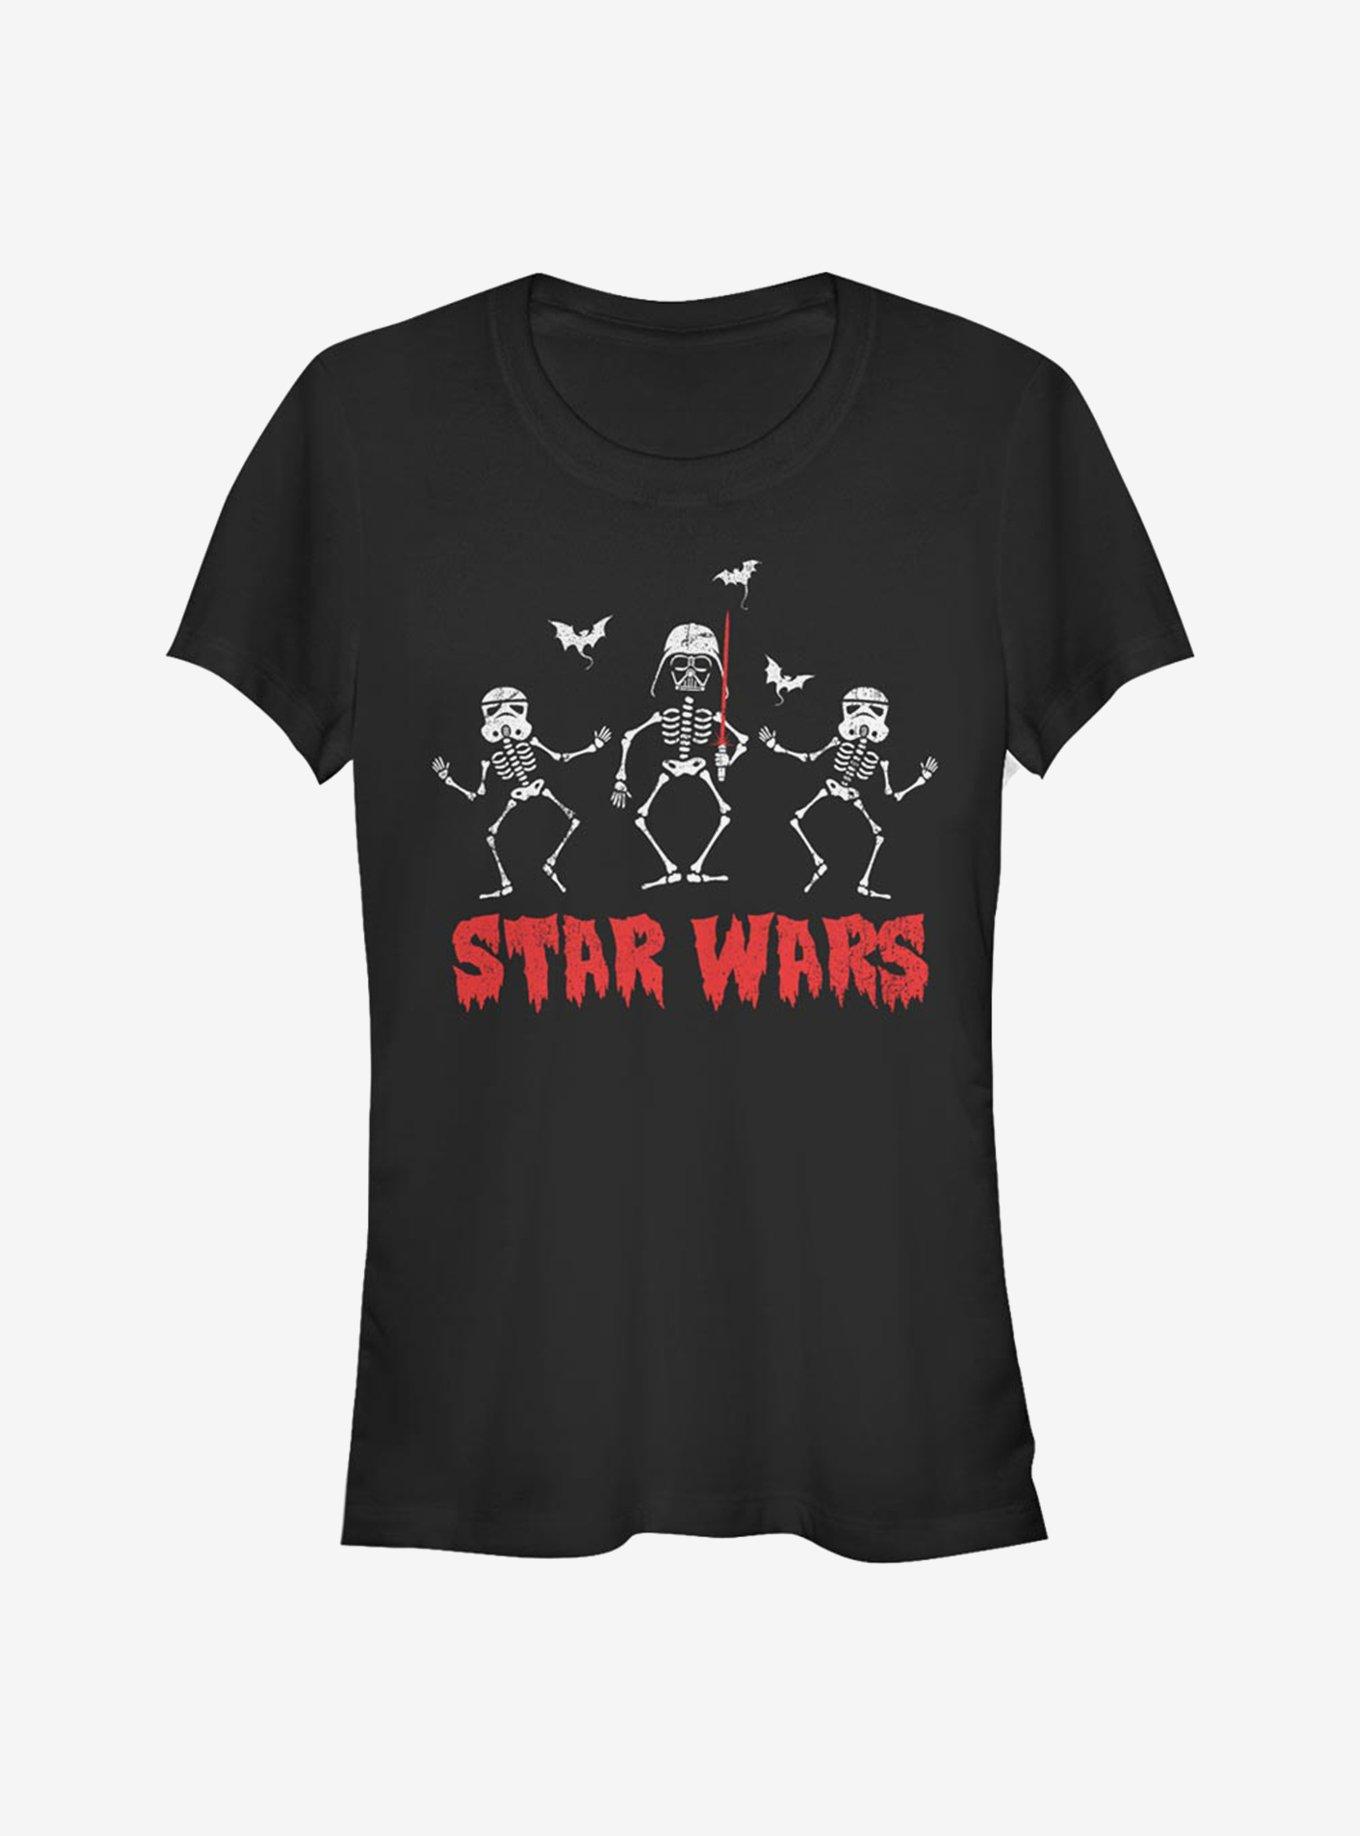 Star Wars Creep Wars Girls T-Shirt, , hi-res